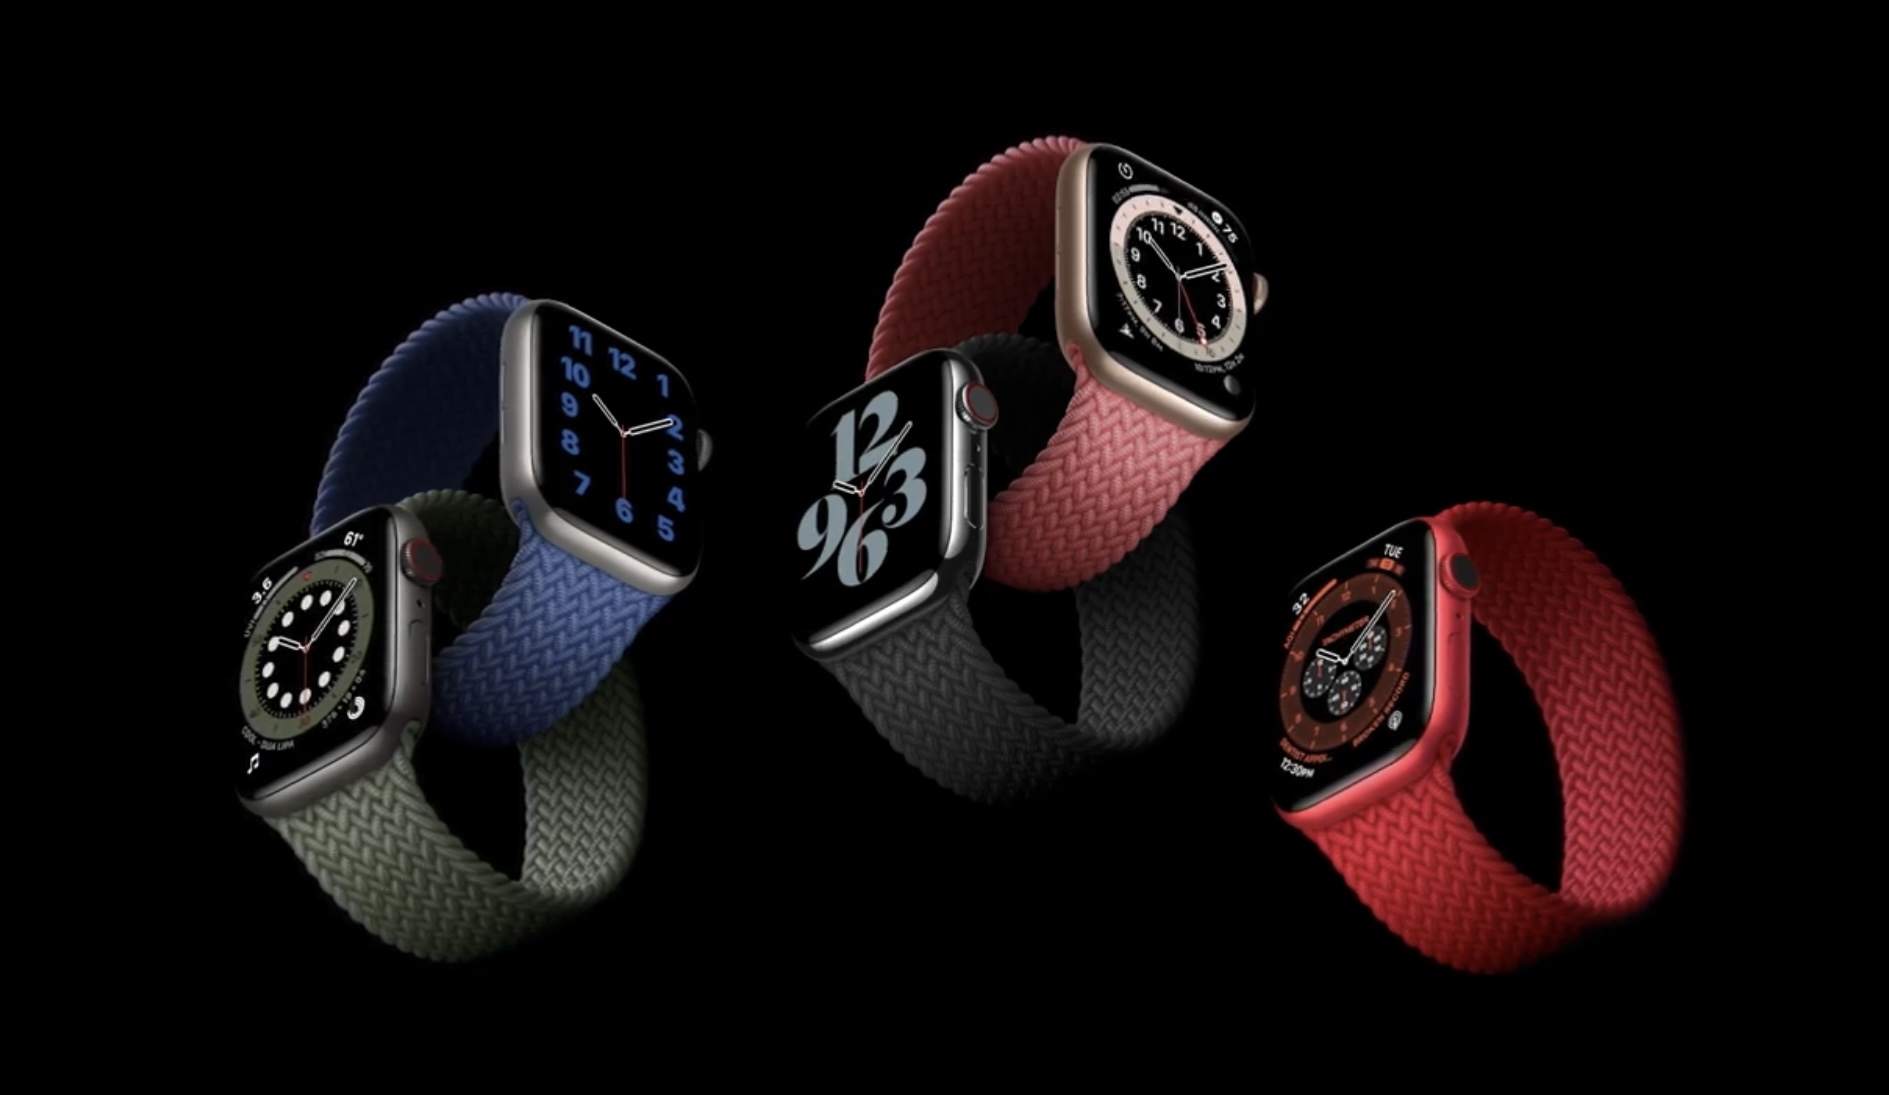 premiera Apple Watch 6 cena series 6 ceny smartwatche watch)S 7 co nowego nowe funkcje opinie